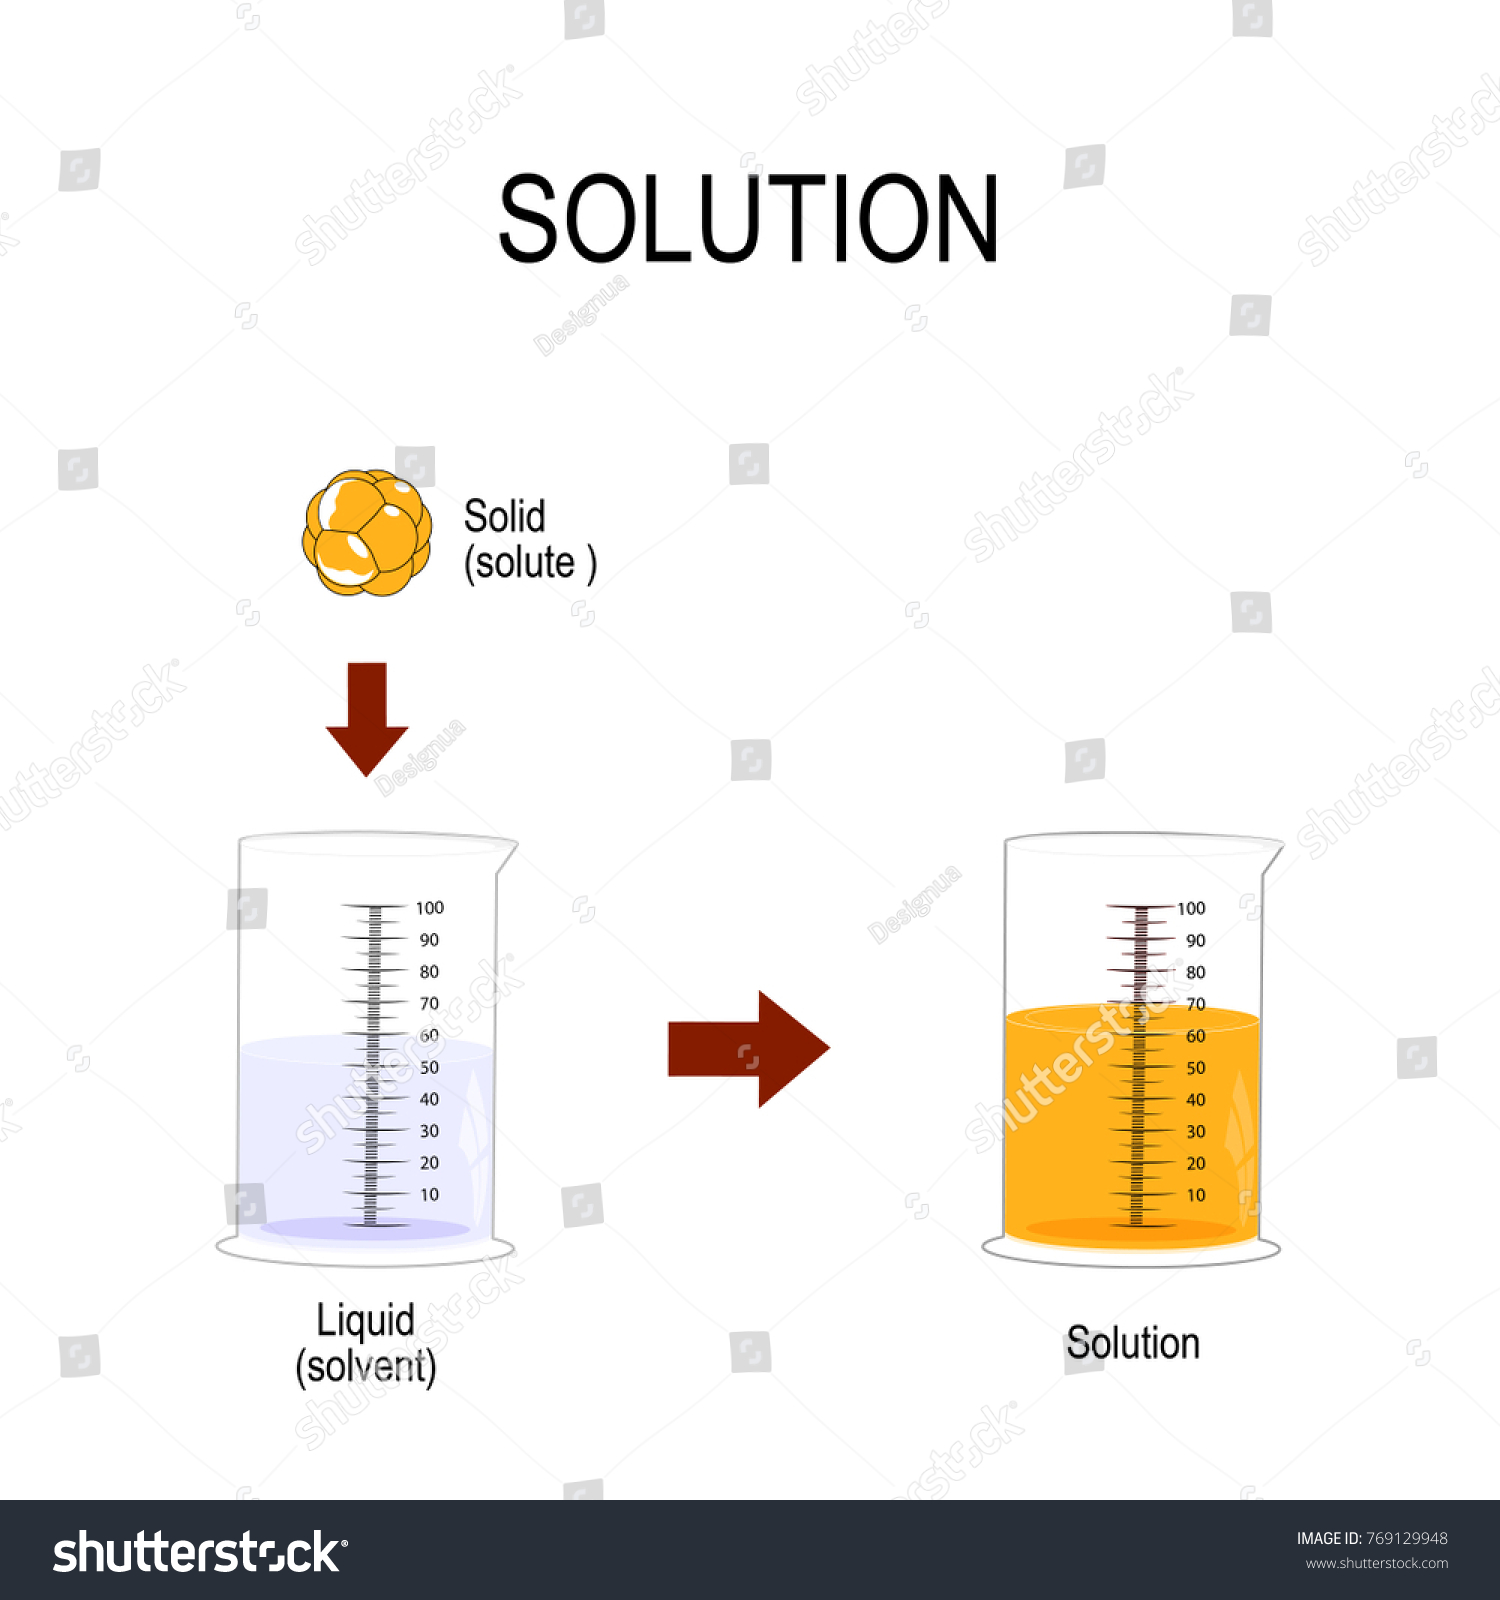 溶液は均一な混合物である 他の物質に溶解した物質 液体中に固体 溶解性化学 イラスト のイラスト素材